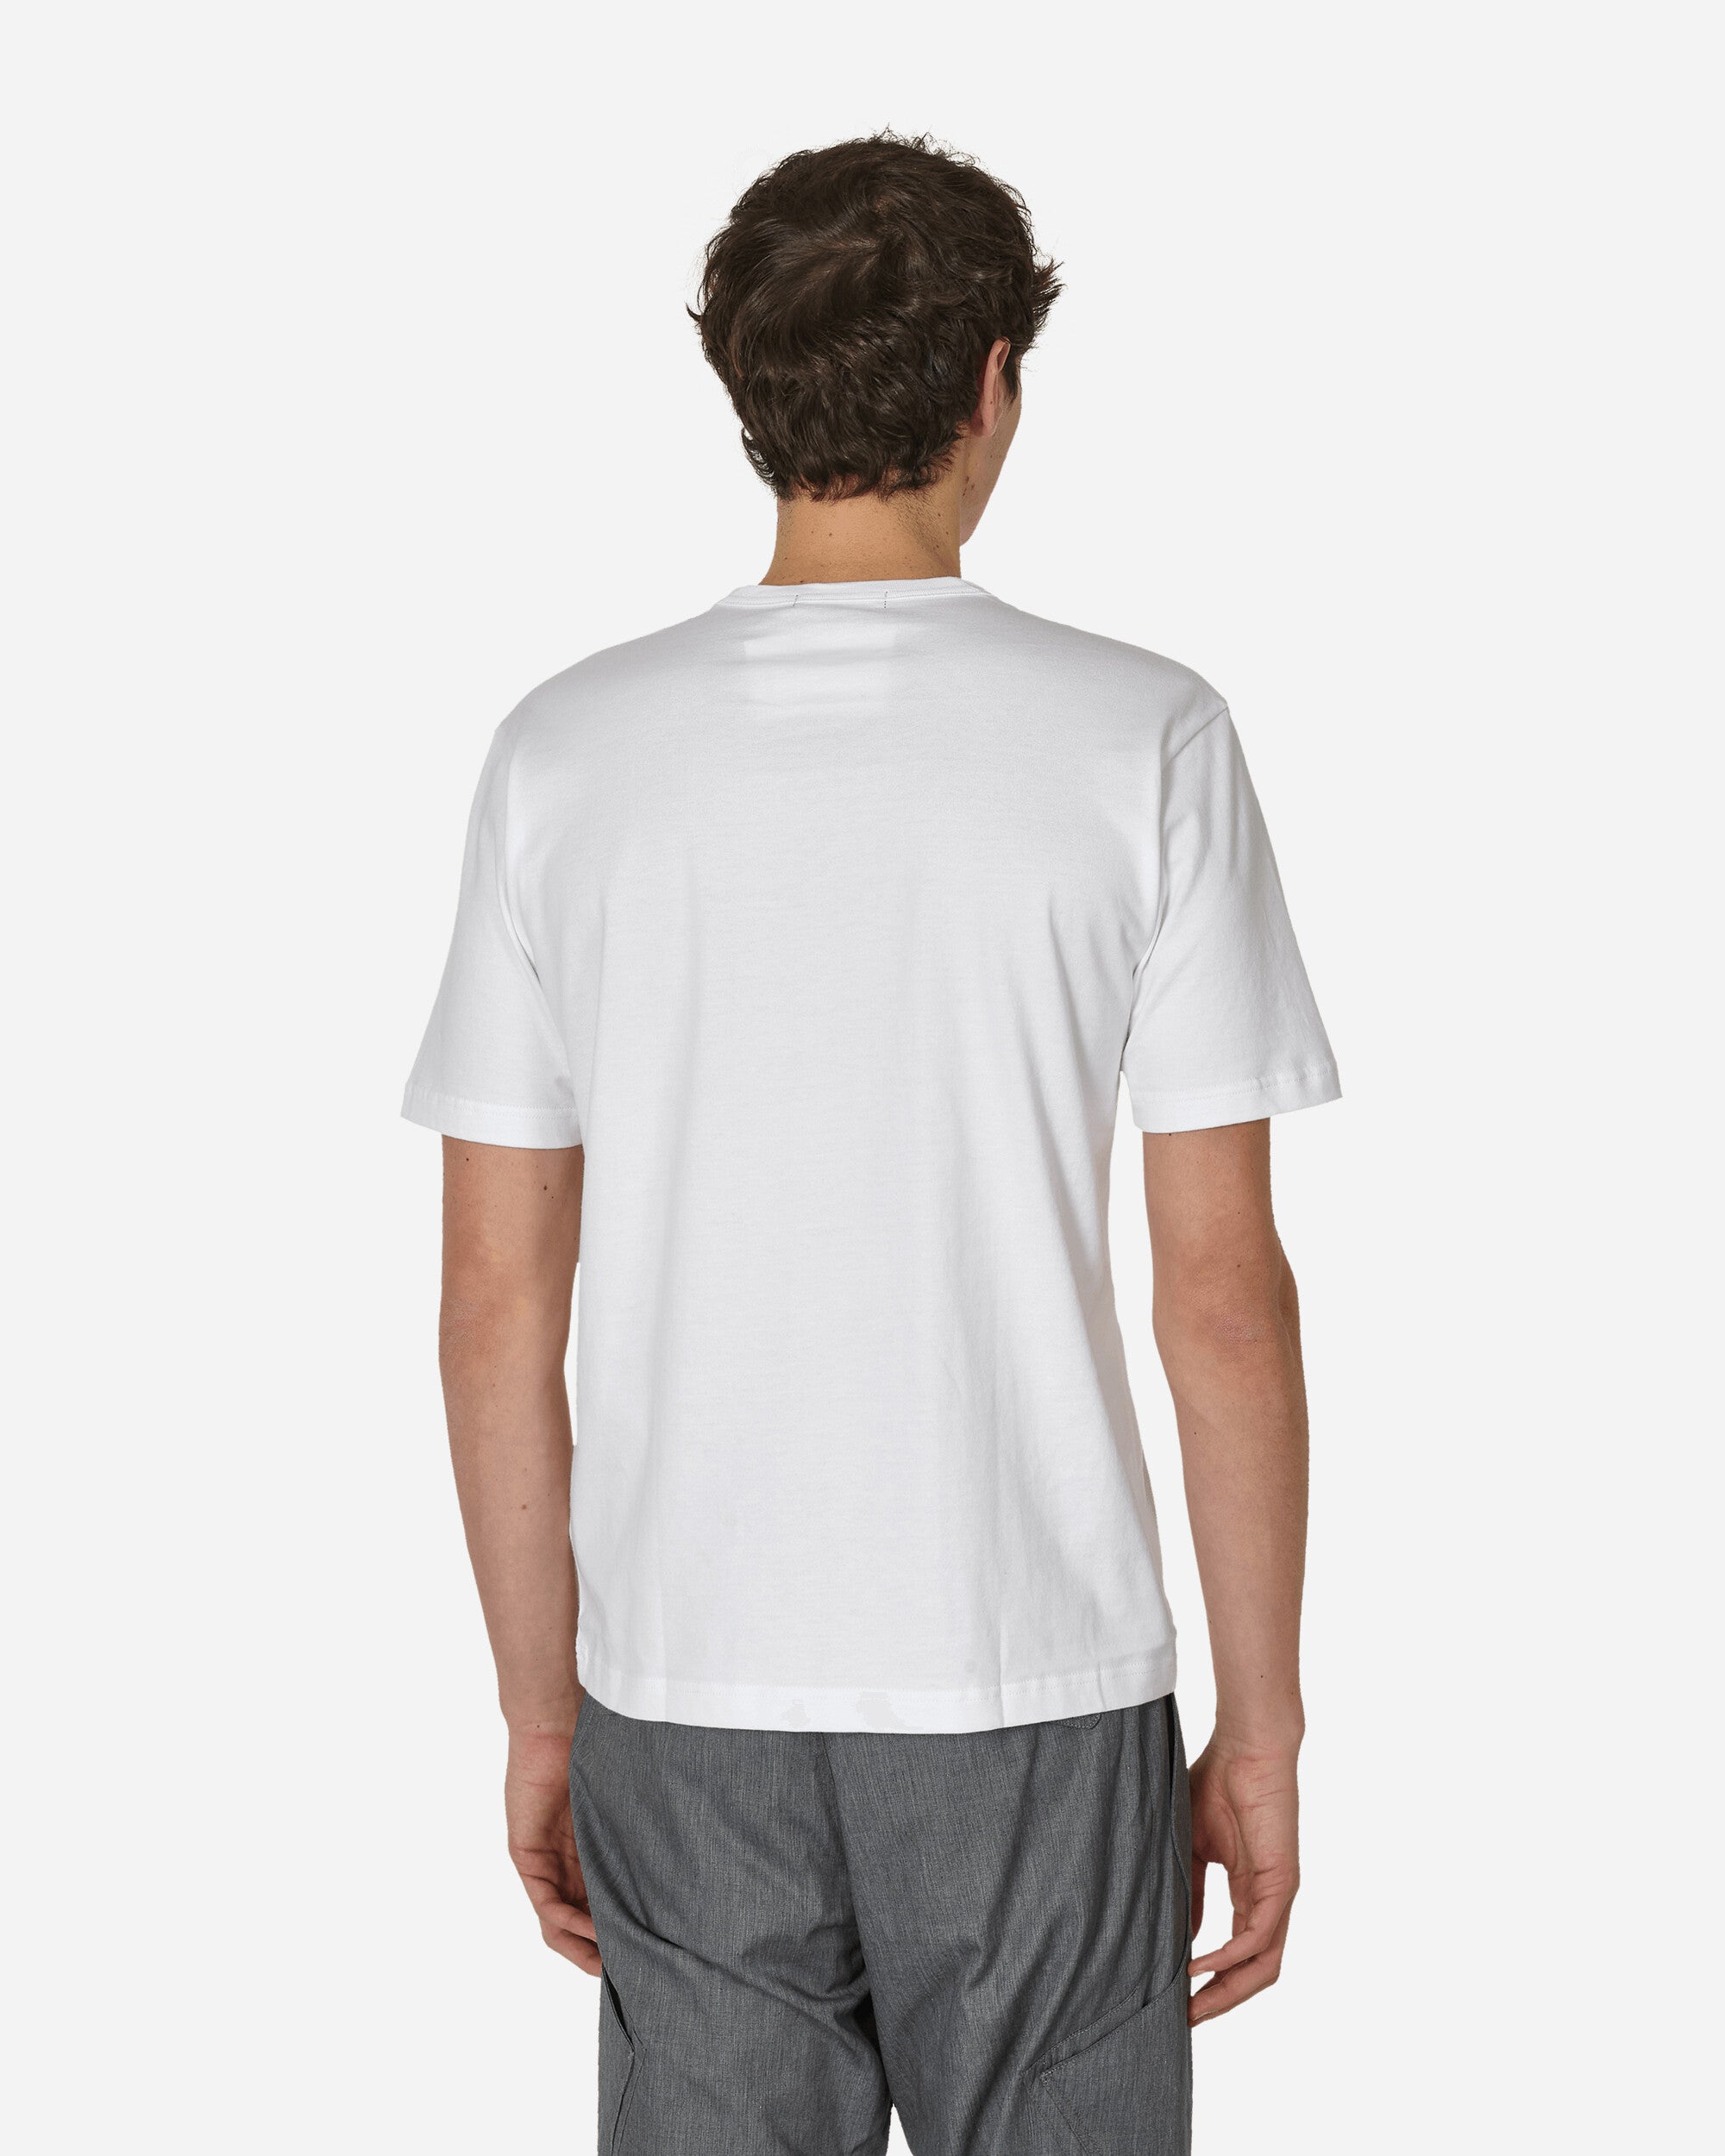 Comme Des Garçons Homme Men'S T-Shirt White T-Shirts Shortsleeve HM-T101-051 2